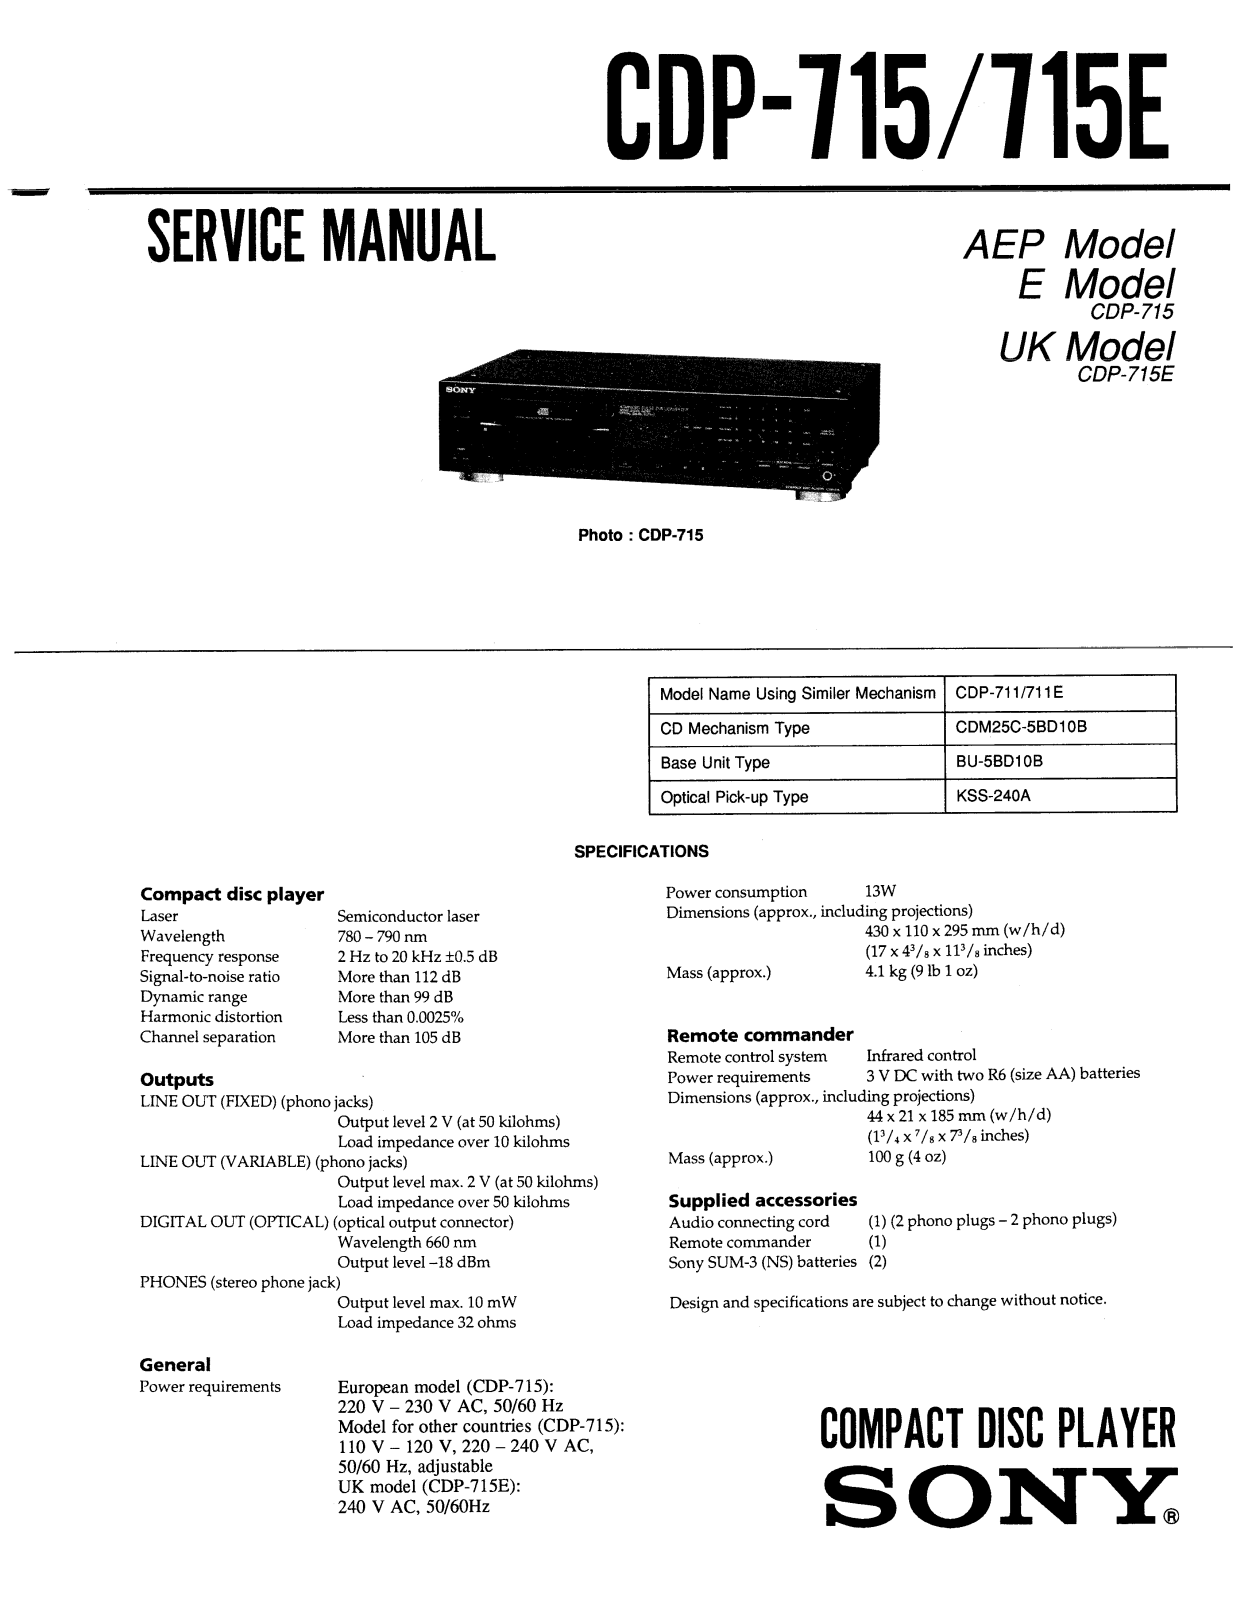 Sony CDP-715, CDP-715-E Service manual